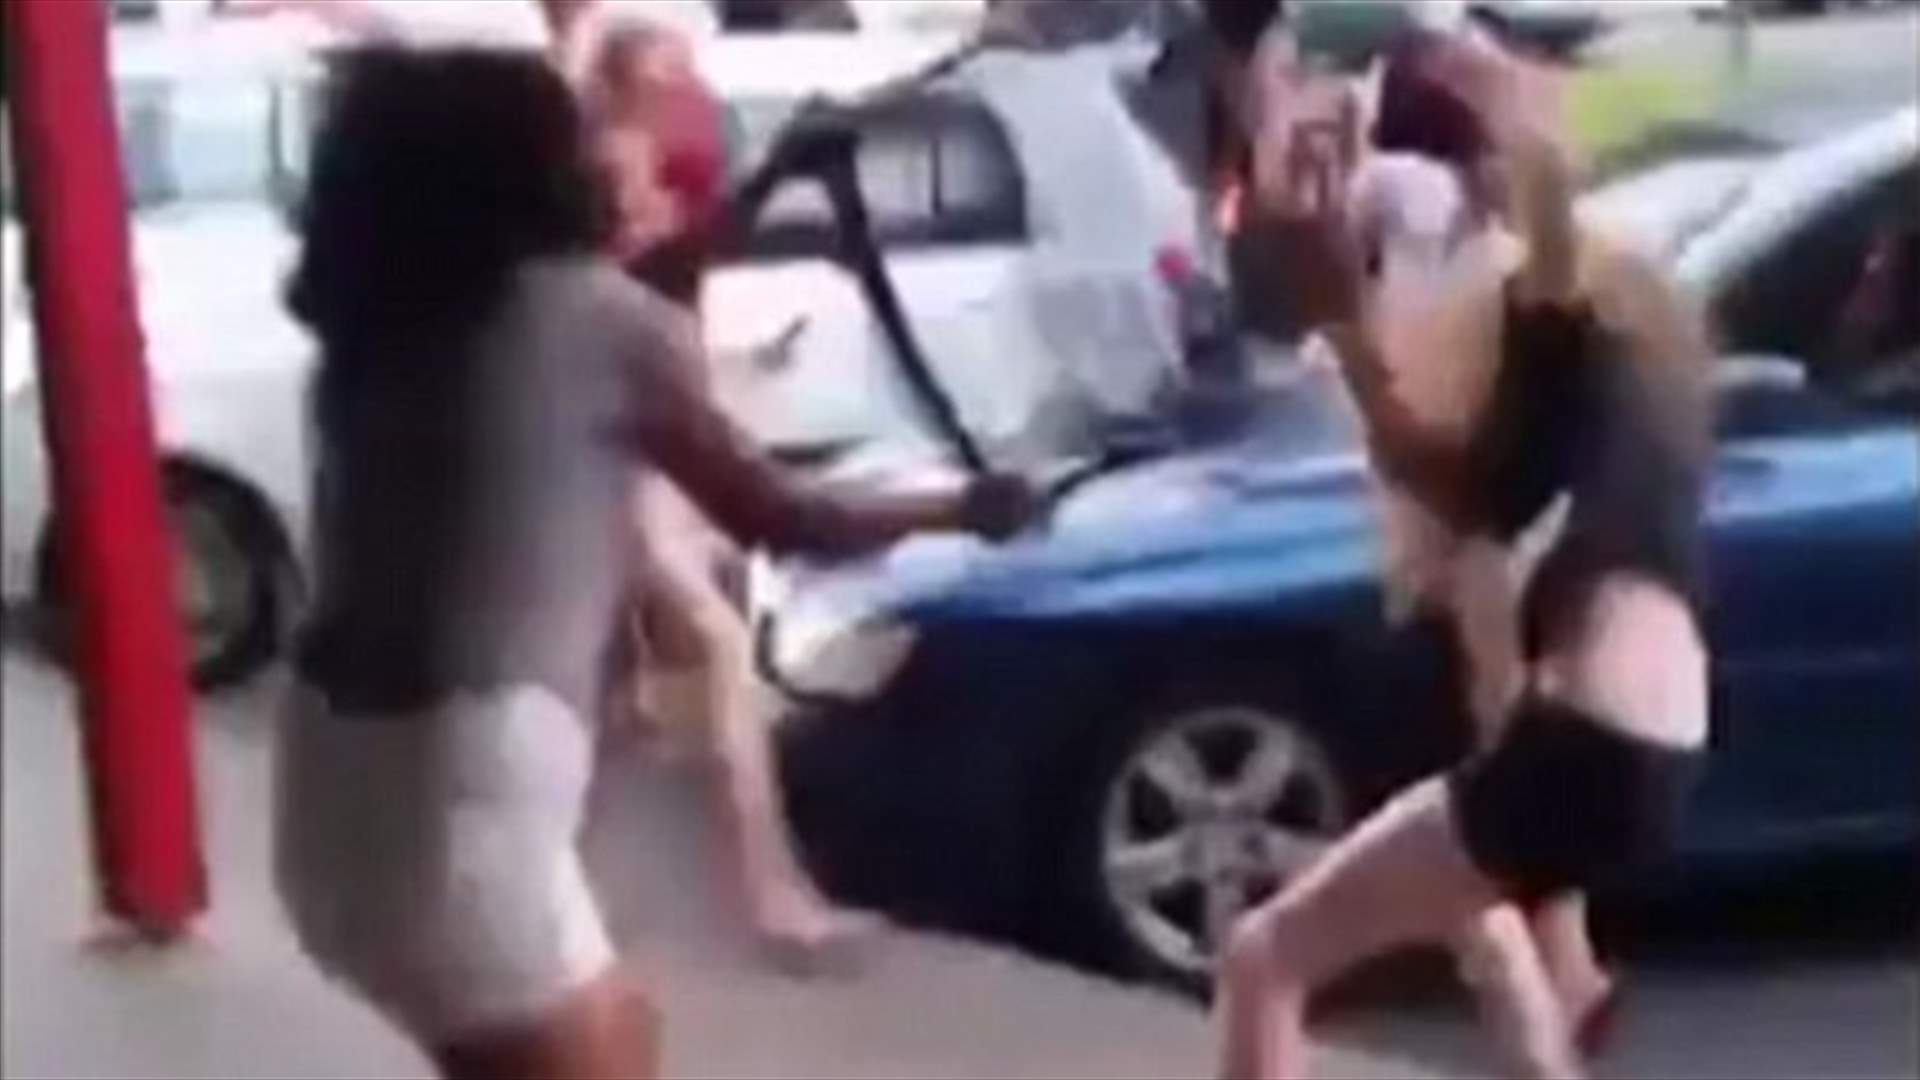 بالفيديو: تضارب عنيف بين سيّدتين في الشارع... كيف انتهى؟